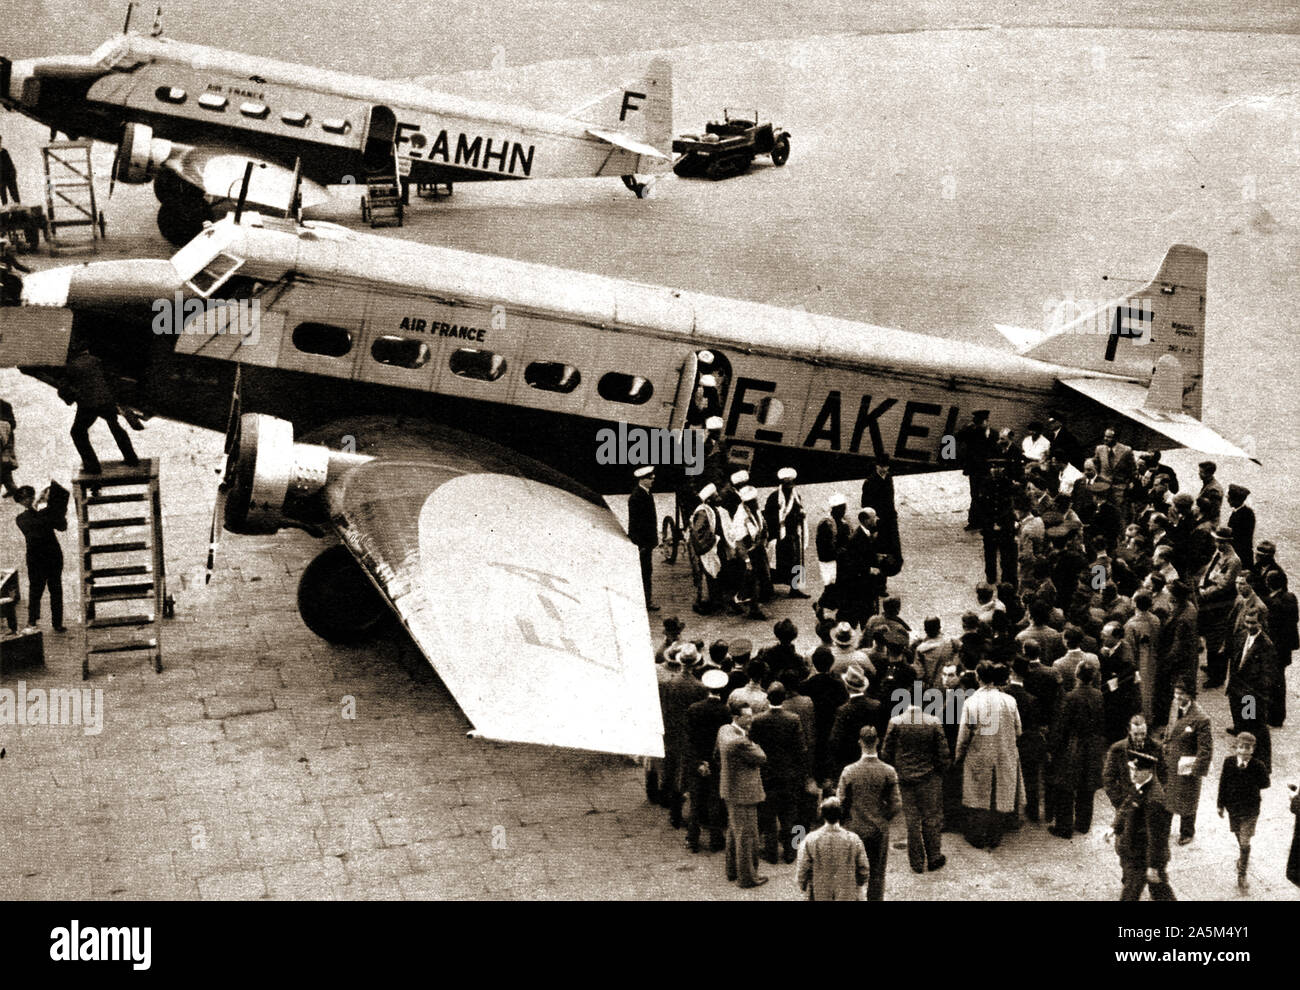 1937 Fotografía tomada durante la coronación del rey Jorge VI de Gran Bretaña. Royal Guest Seif Al Islam Hussein de Yemen desembarcar en el aeropuerto de Croydon desde un avión de Air France Foto de stock